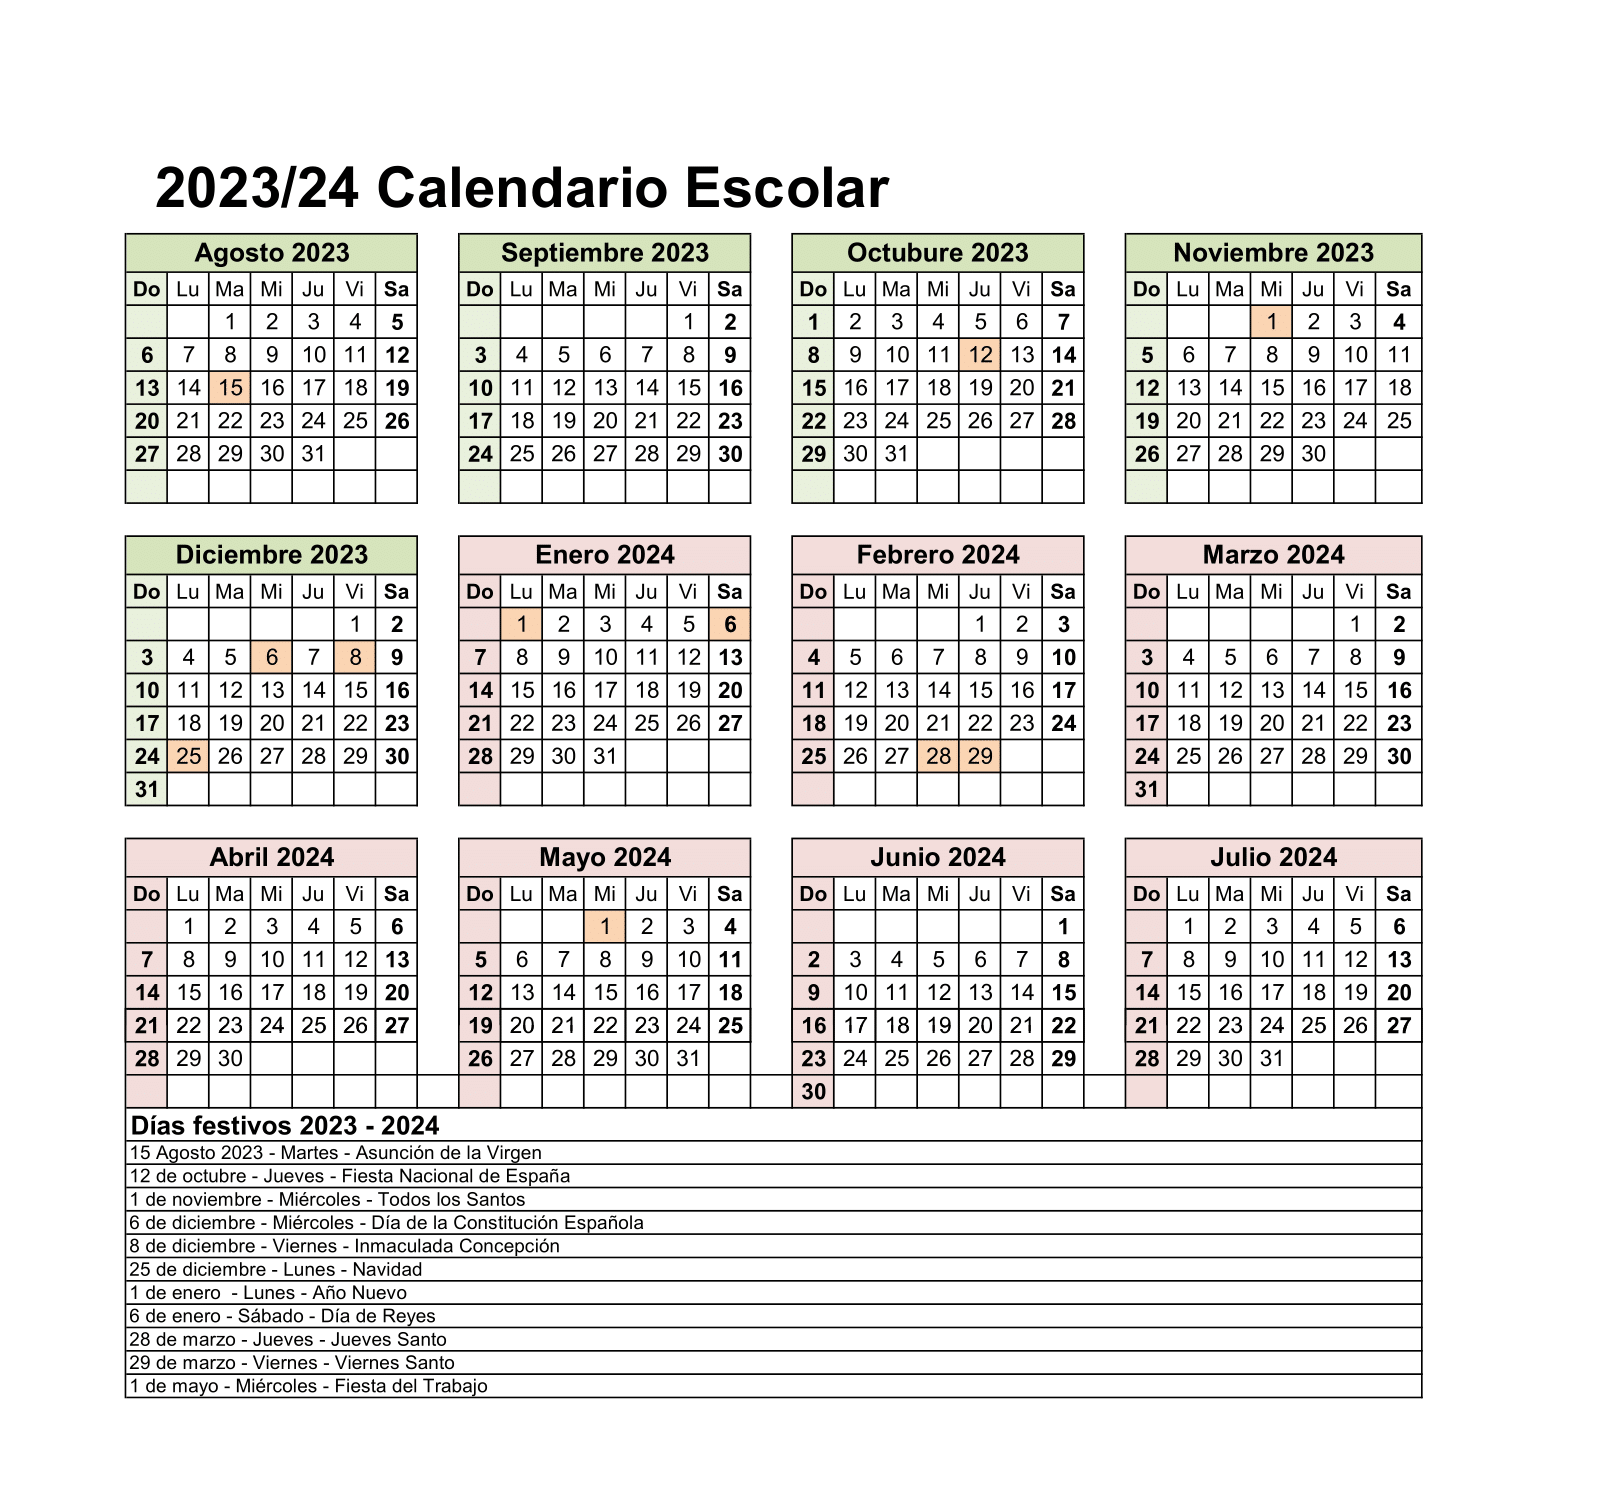 Calendario escolar 2023 2024